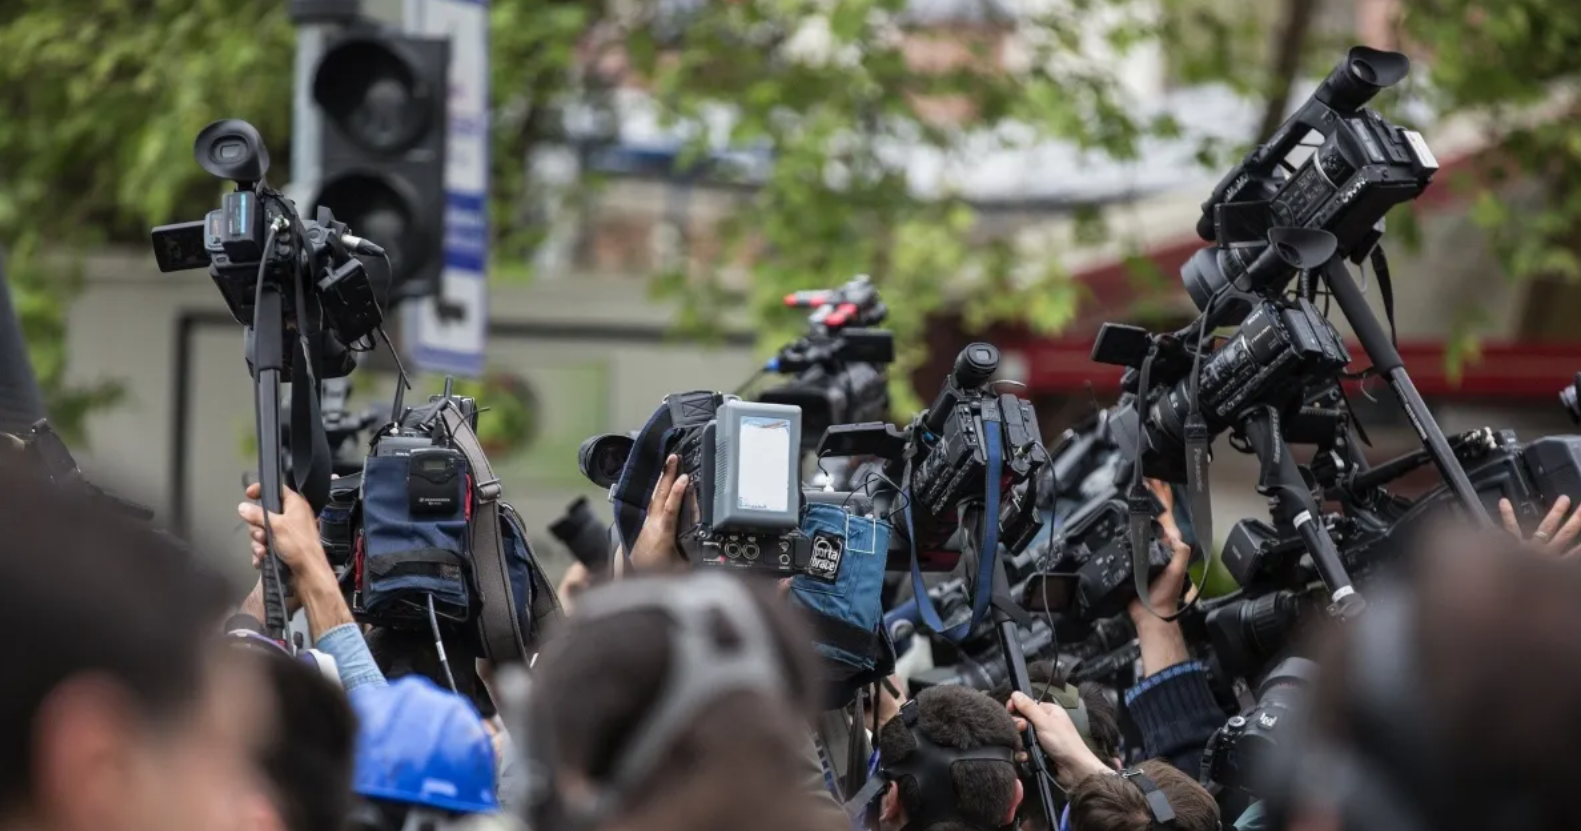 Sntp exige garantías para periodistas y medios de comunicación en la cobertura la campaña electoral en Venezuela